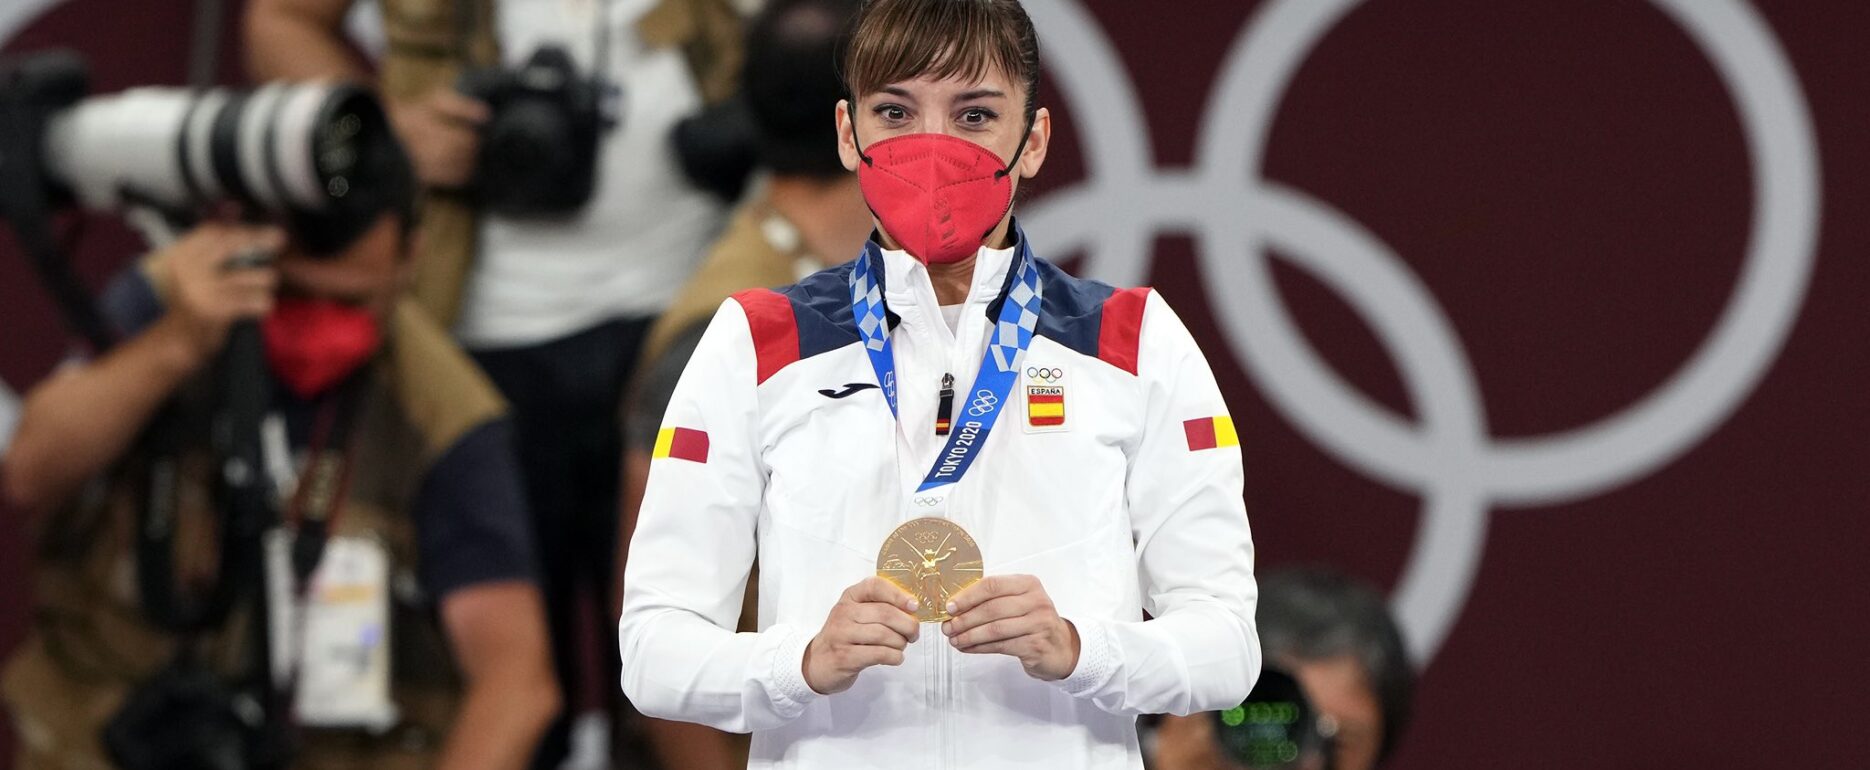 La medalla de oro ya cuelga del cuello de Sandra Sánchez.